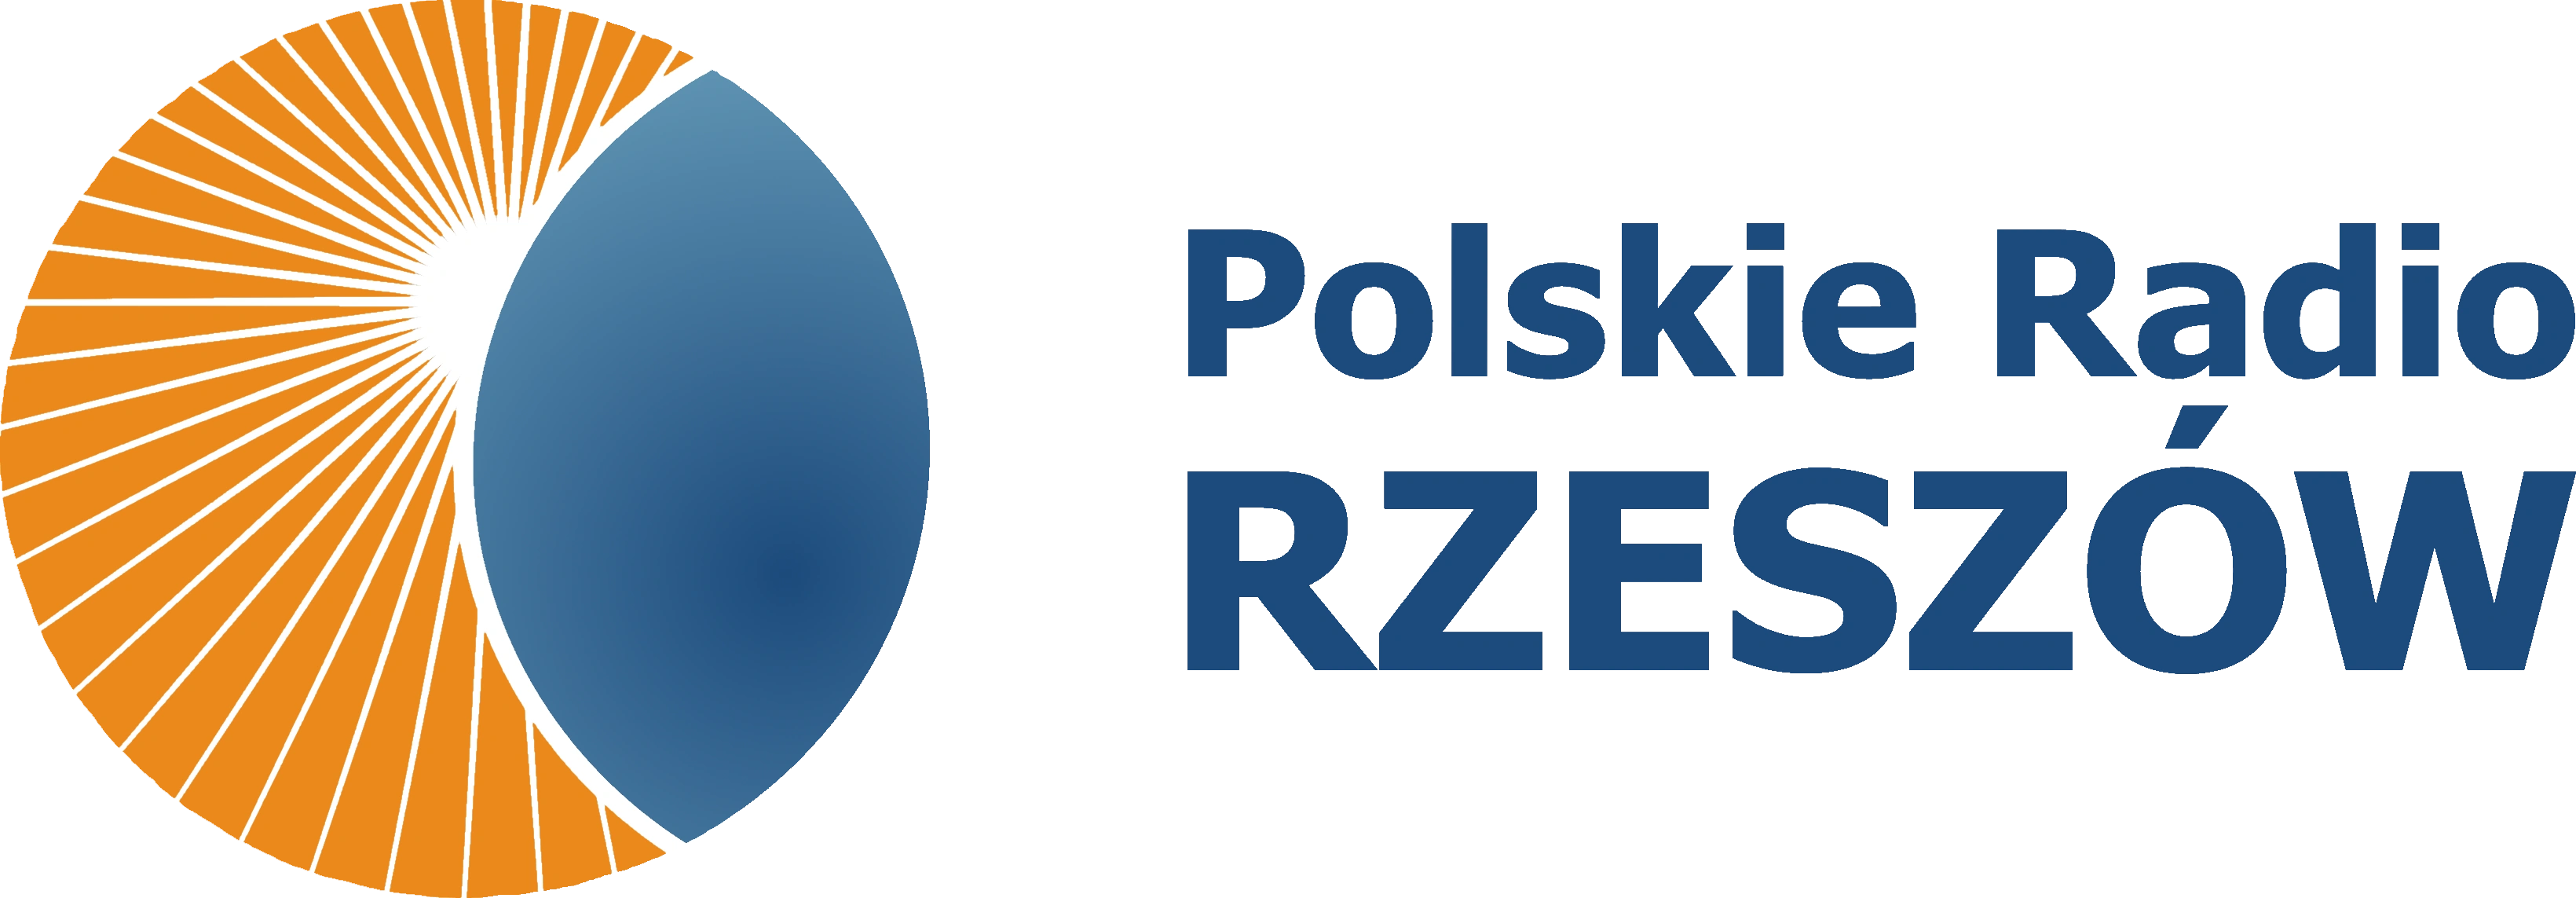 Logotyp Polskiego Radia Rzeszów